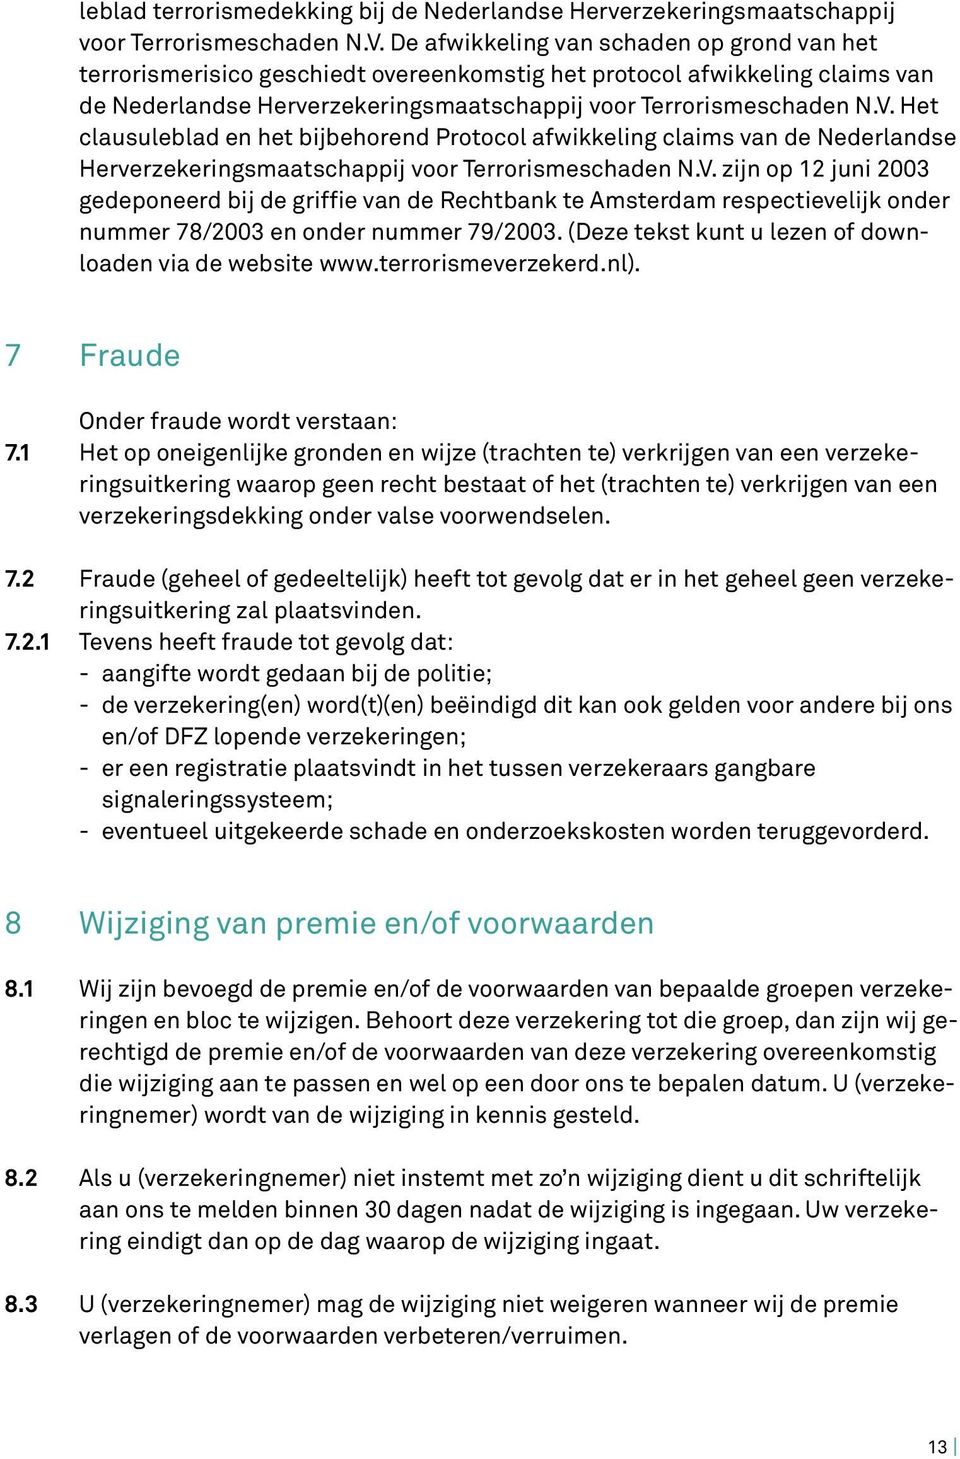 Het clausuleblad en het bijbehorend Protocol afwikkeling claims van de Nederlandse Herverzekeringsmaatschappij voor Terrorismeschaden N.V.